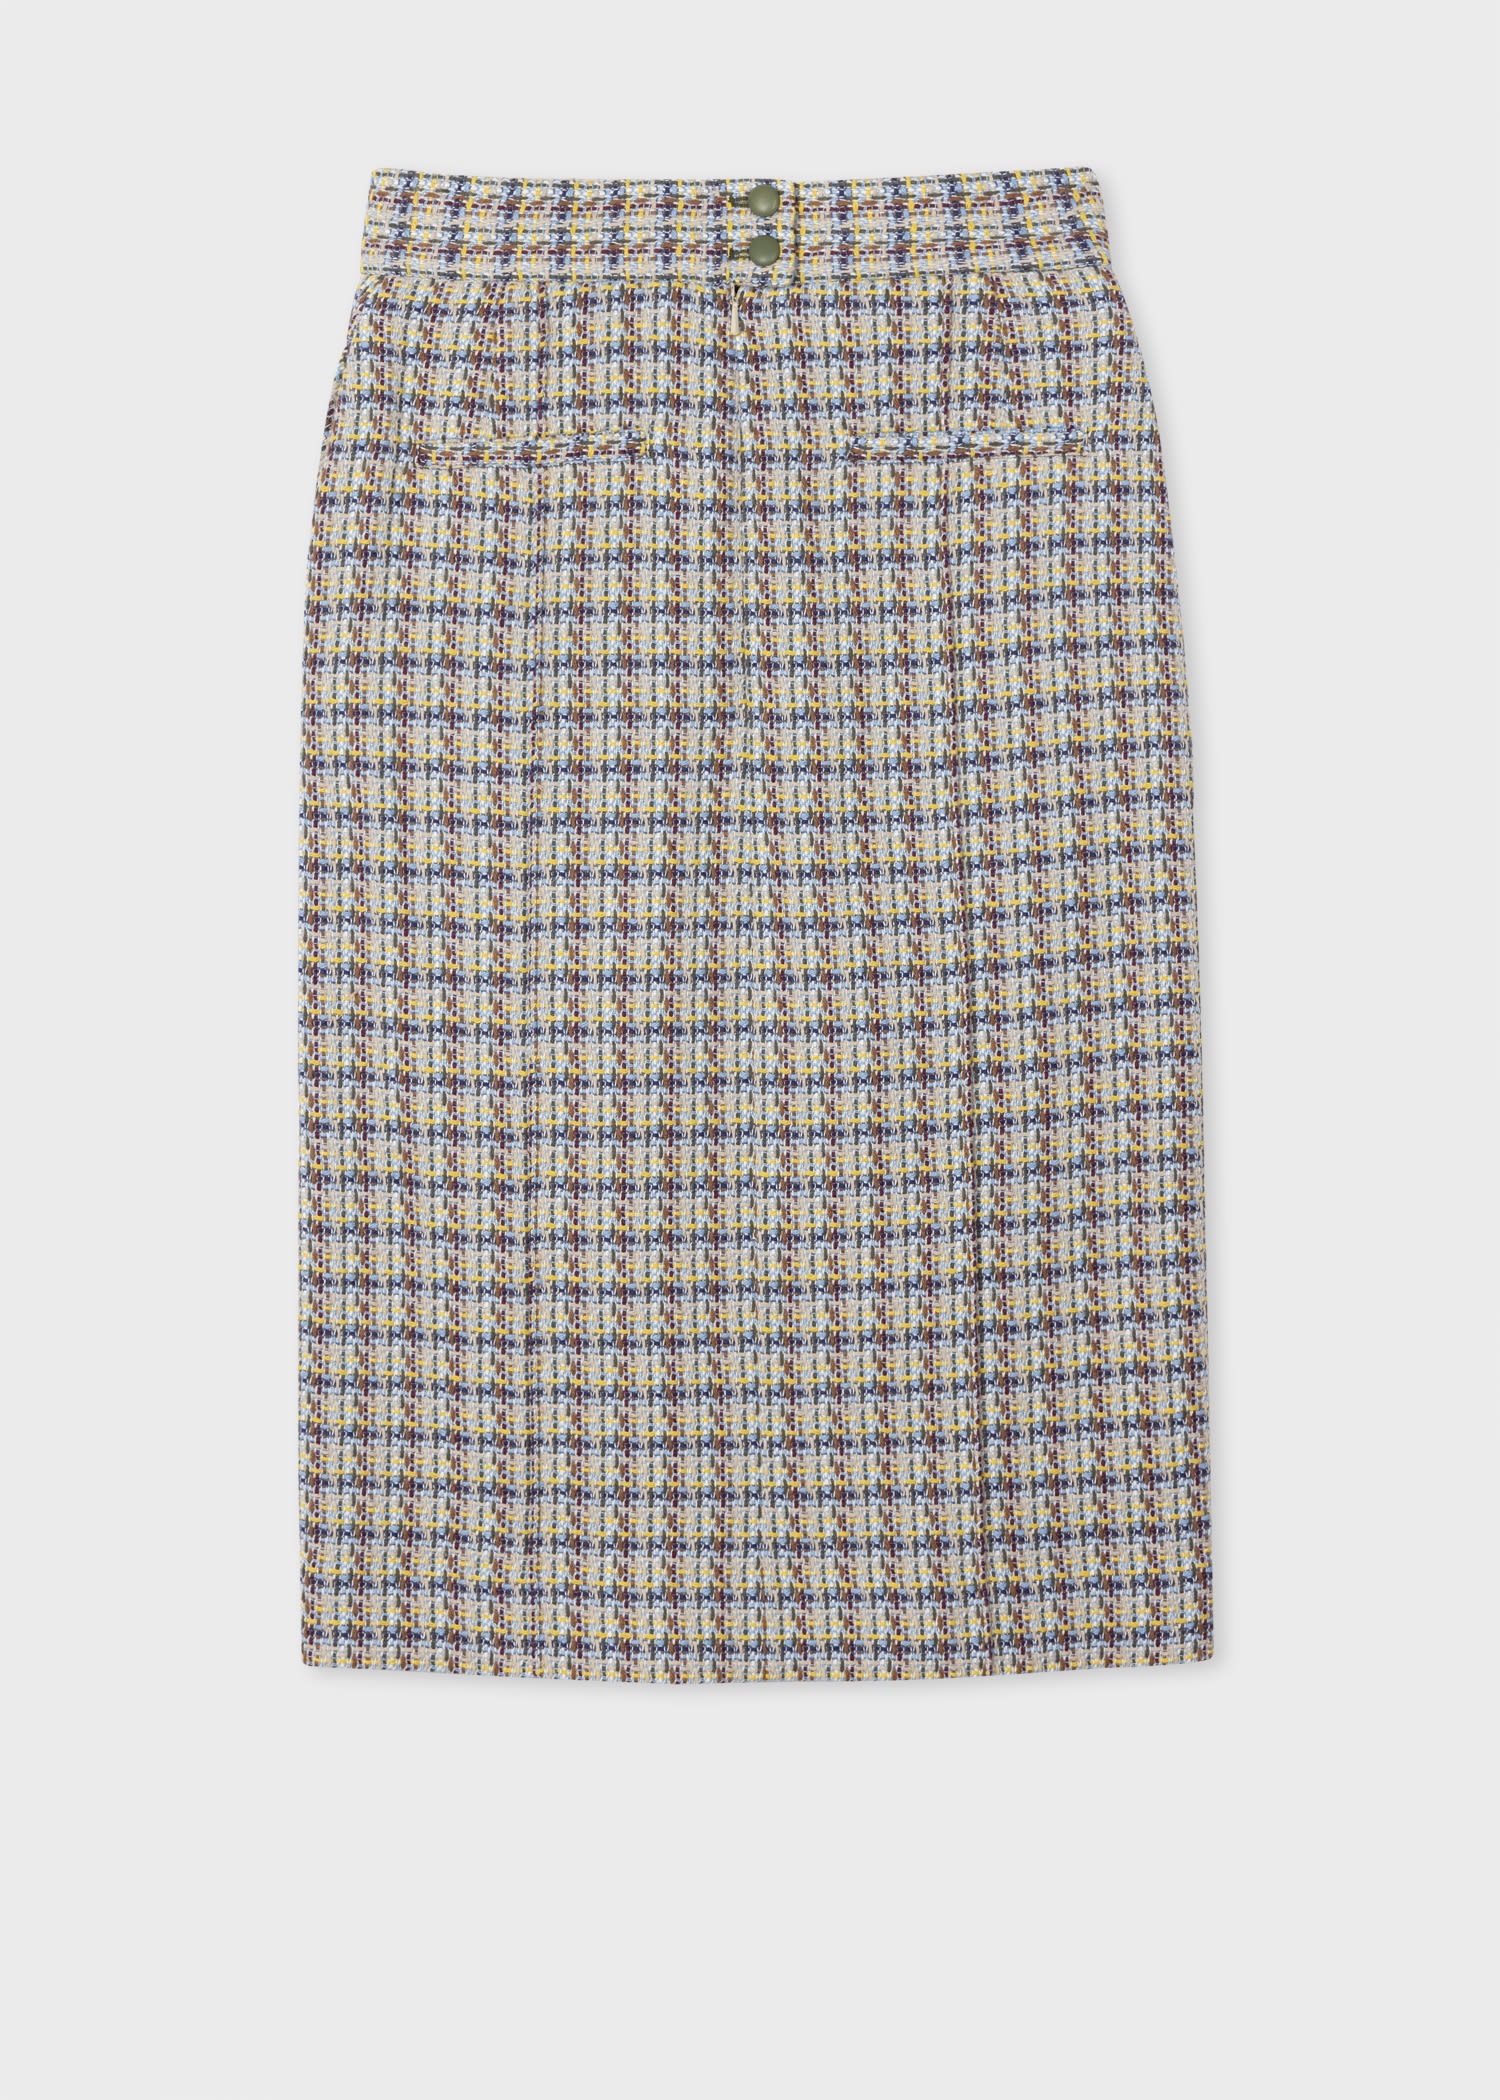 Cotton Tweed Skirt Suit - 4